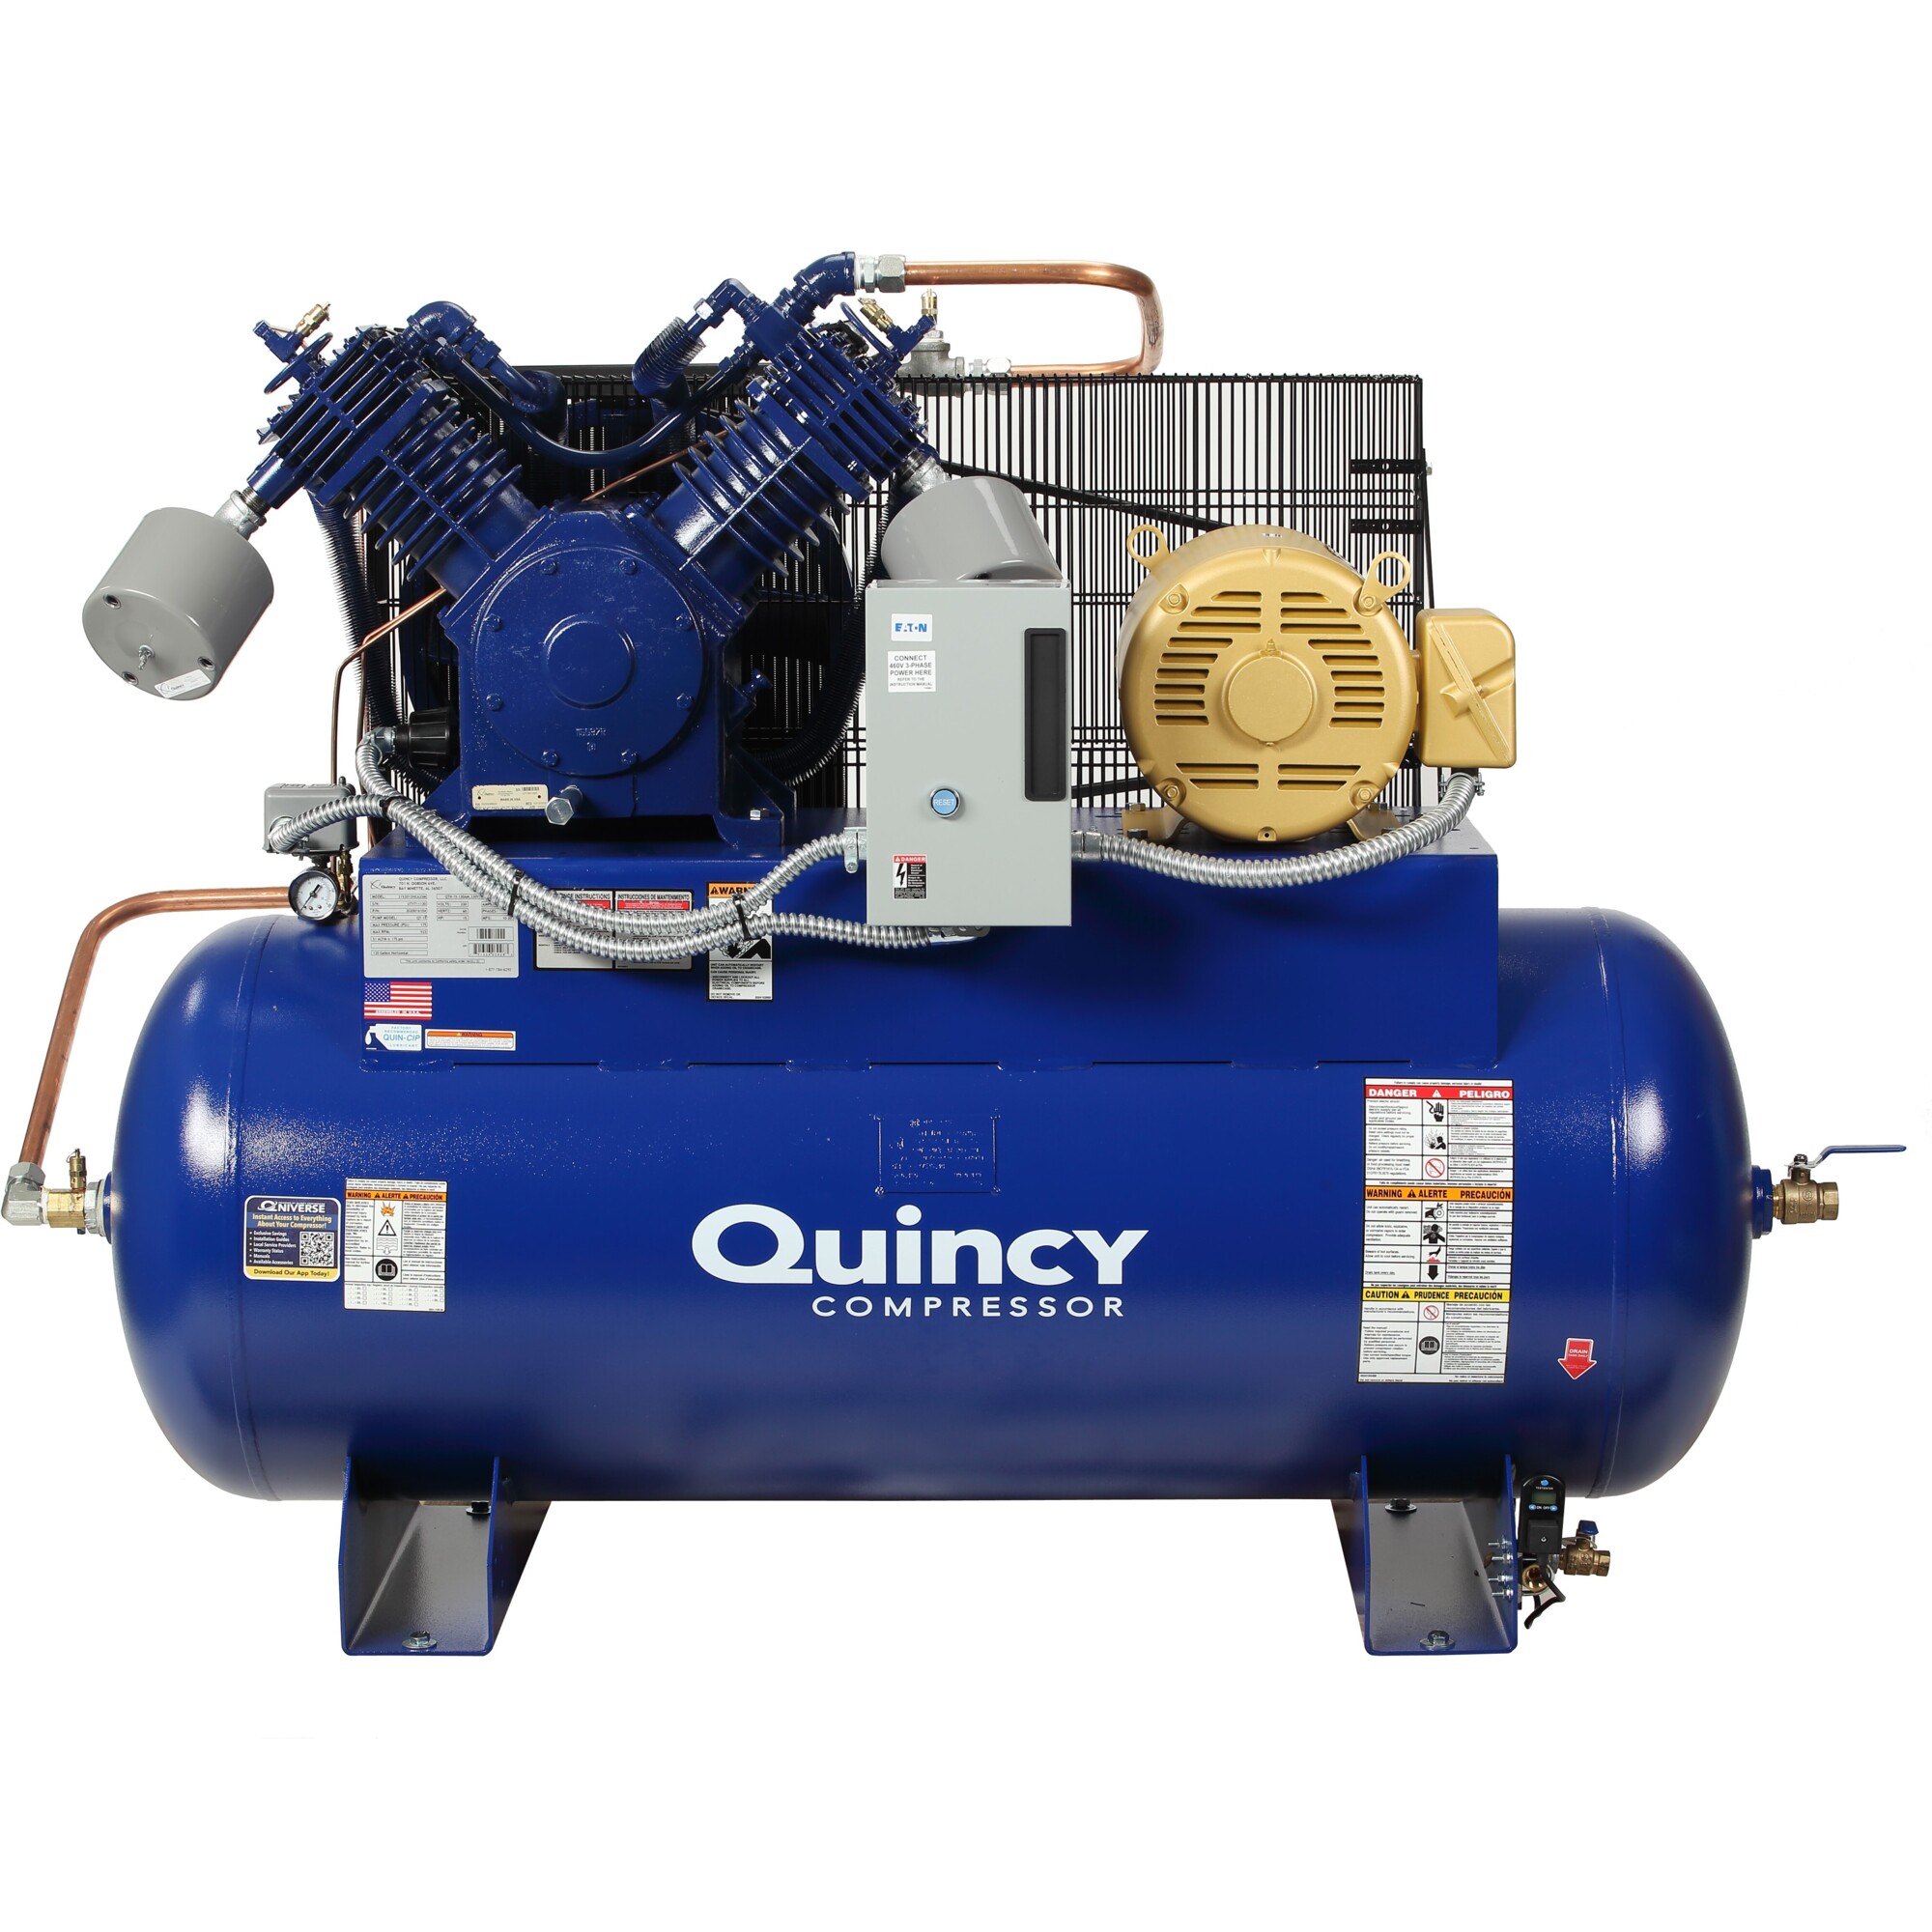 Quincy Compressor, QT2 15H 120G 2Stg Air Compressor 460V 3ph HM, Horsepower 15 HP, Air Tank Size 120 Gal, Volts 460 Model 4153D12HCA46M